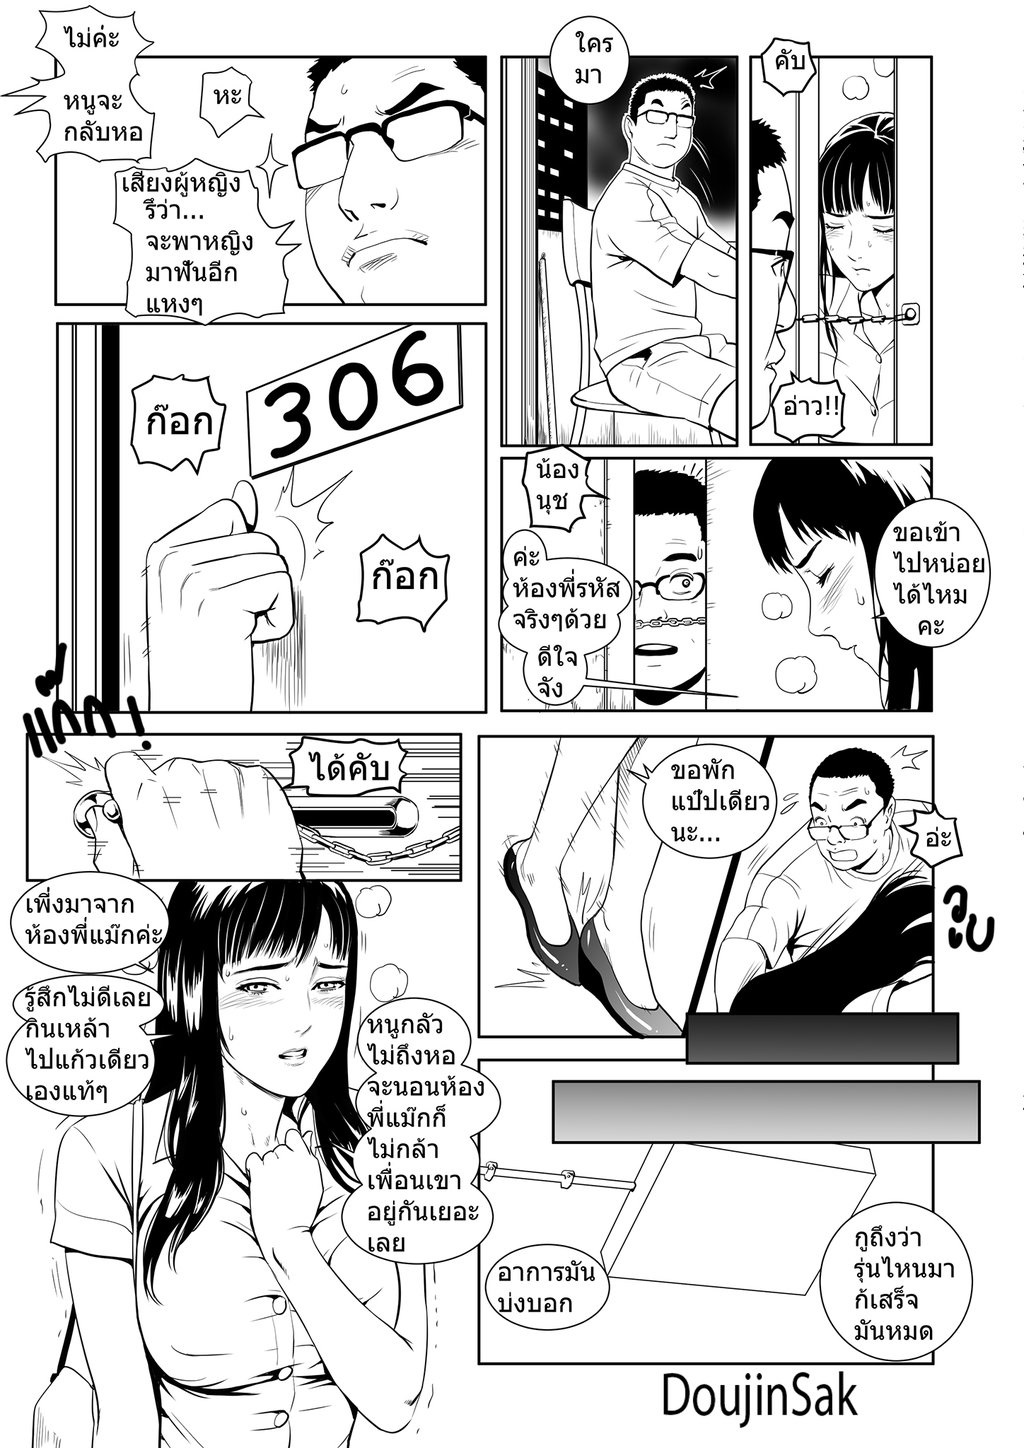 [Doujin Sak] Doujin Sak Manga and Artwork [Thai ภาษาไทย] 